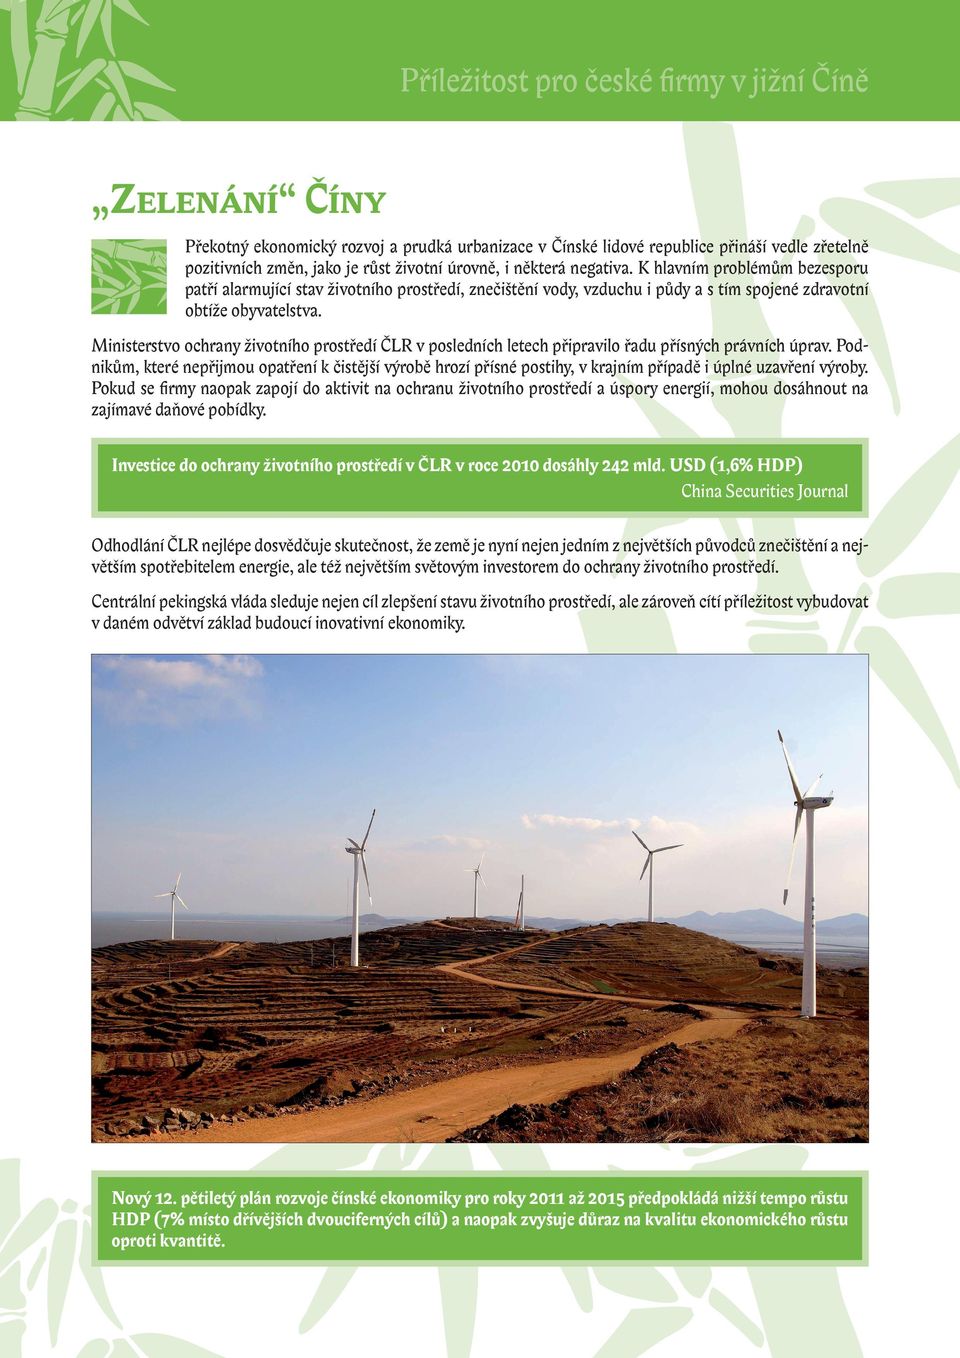 Ministerstvo ochrany životního prostředí ČLR v posledních letech připravilo řadu přísných právních úprav.